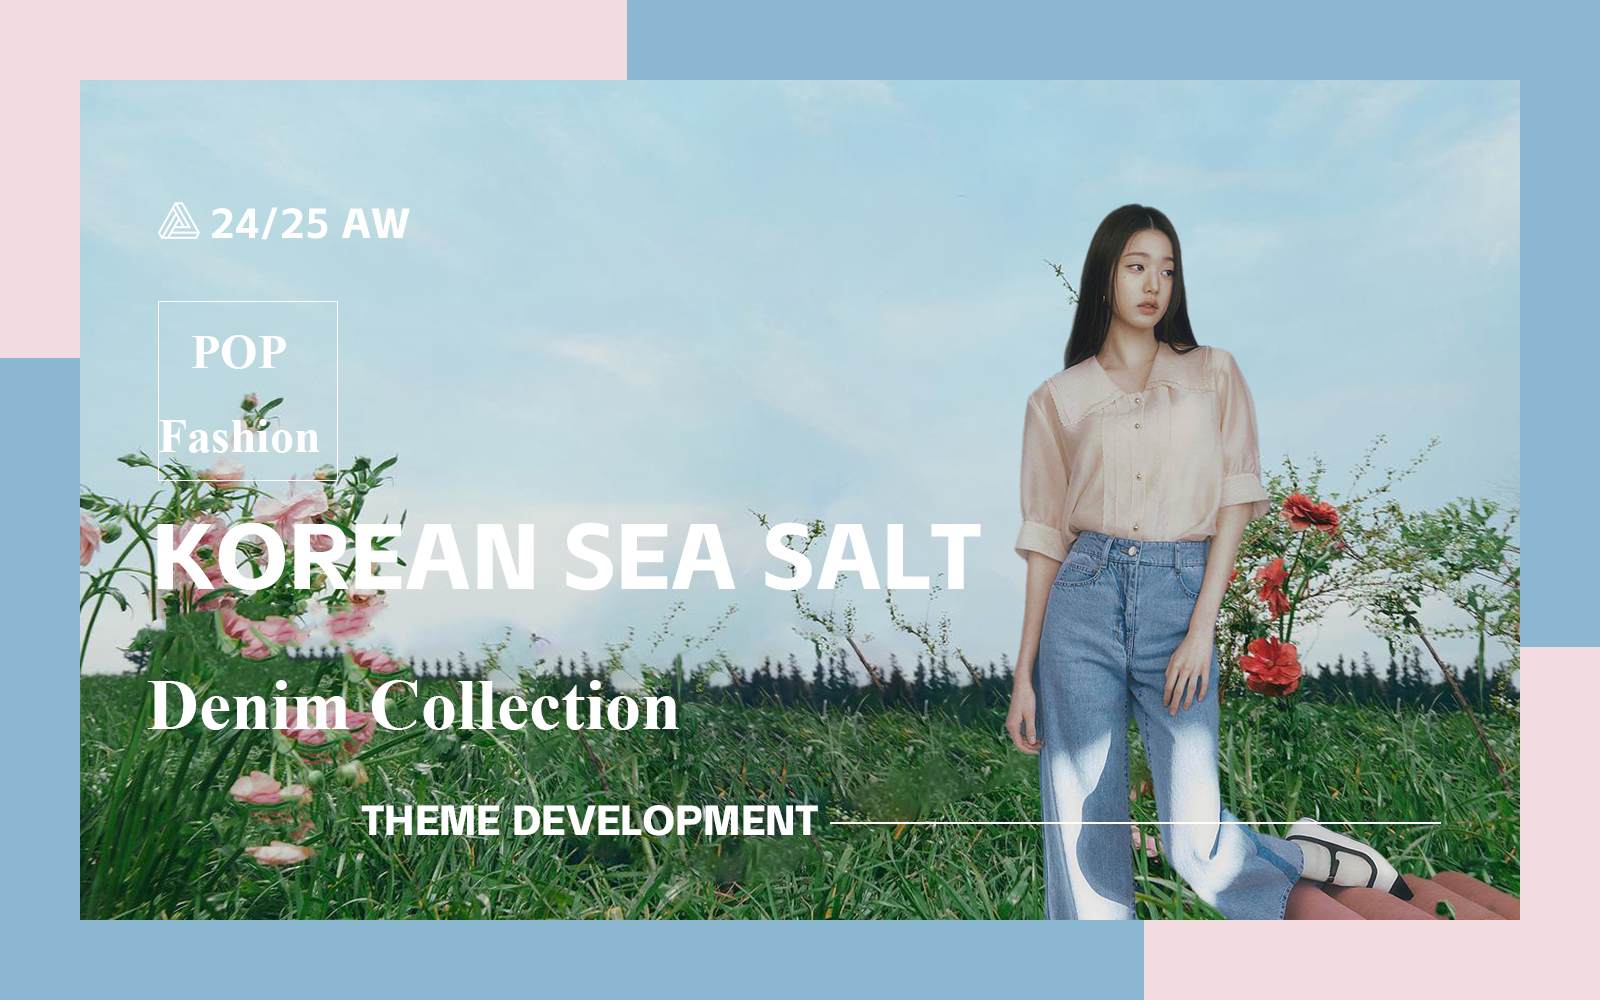 Korean Sea Salt -- The Design Development of Denim